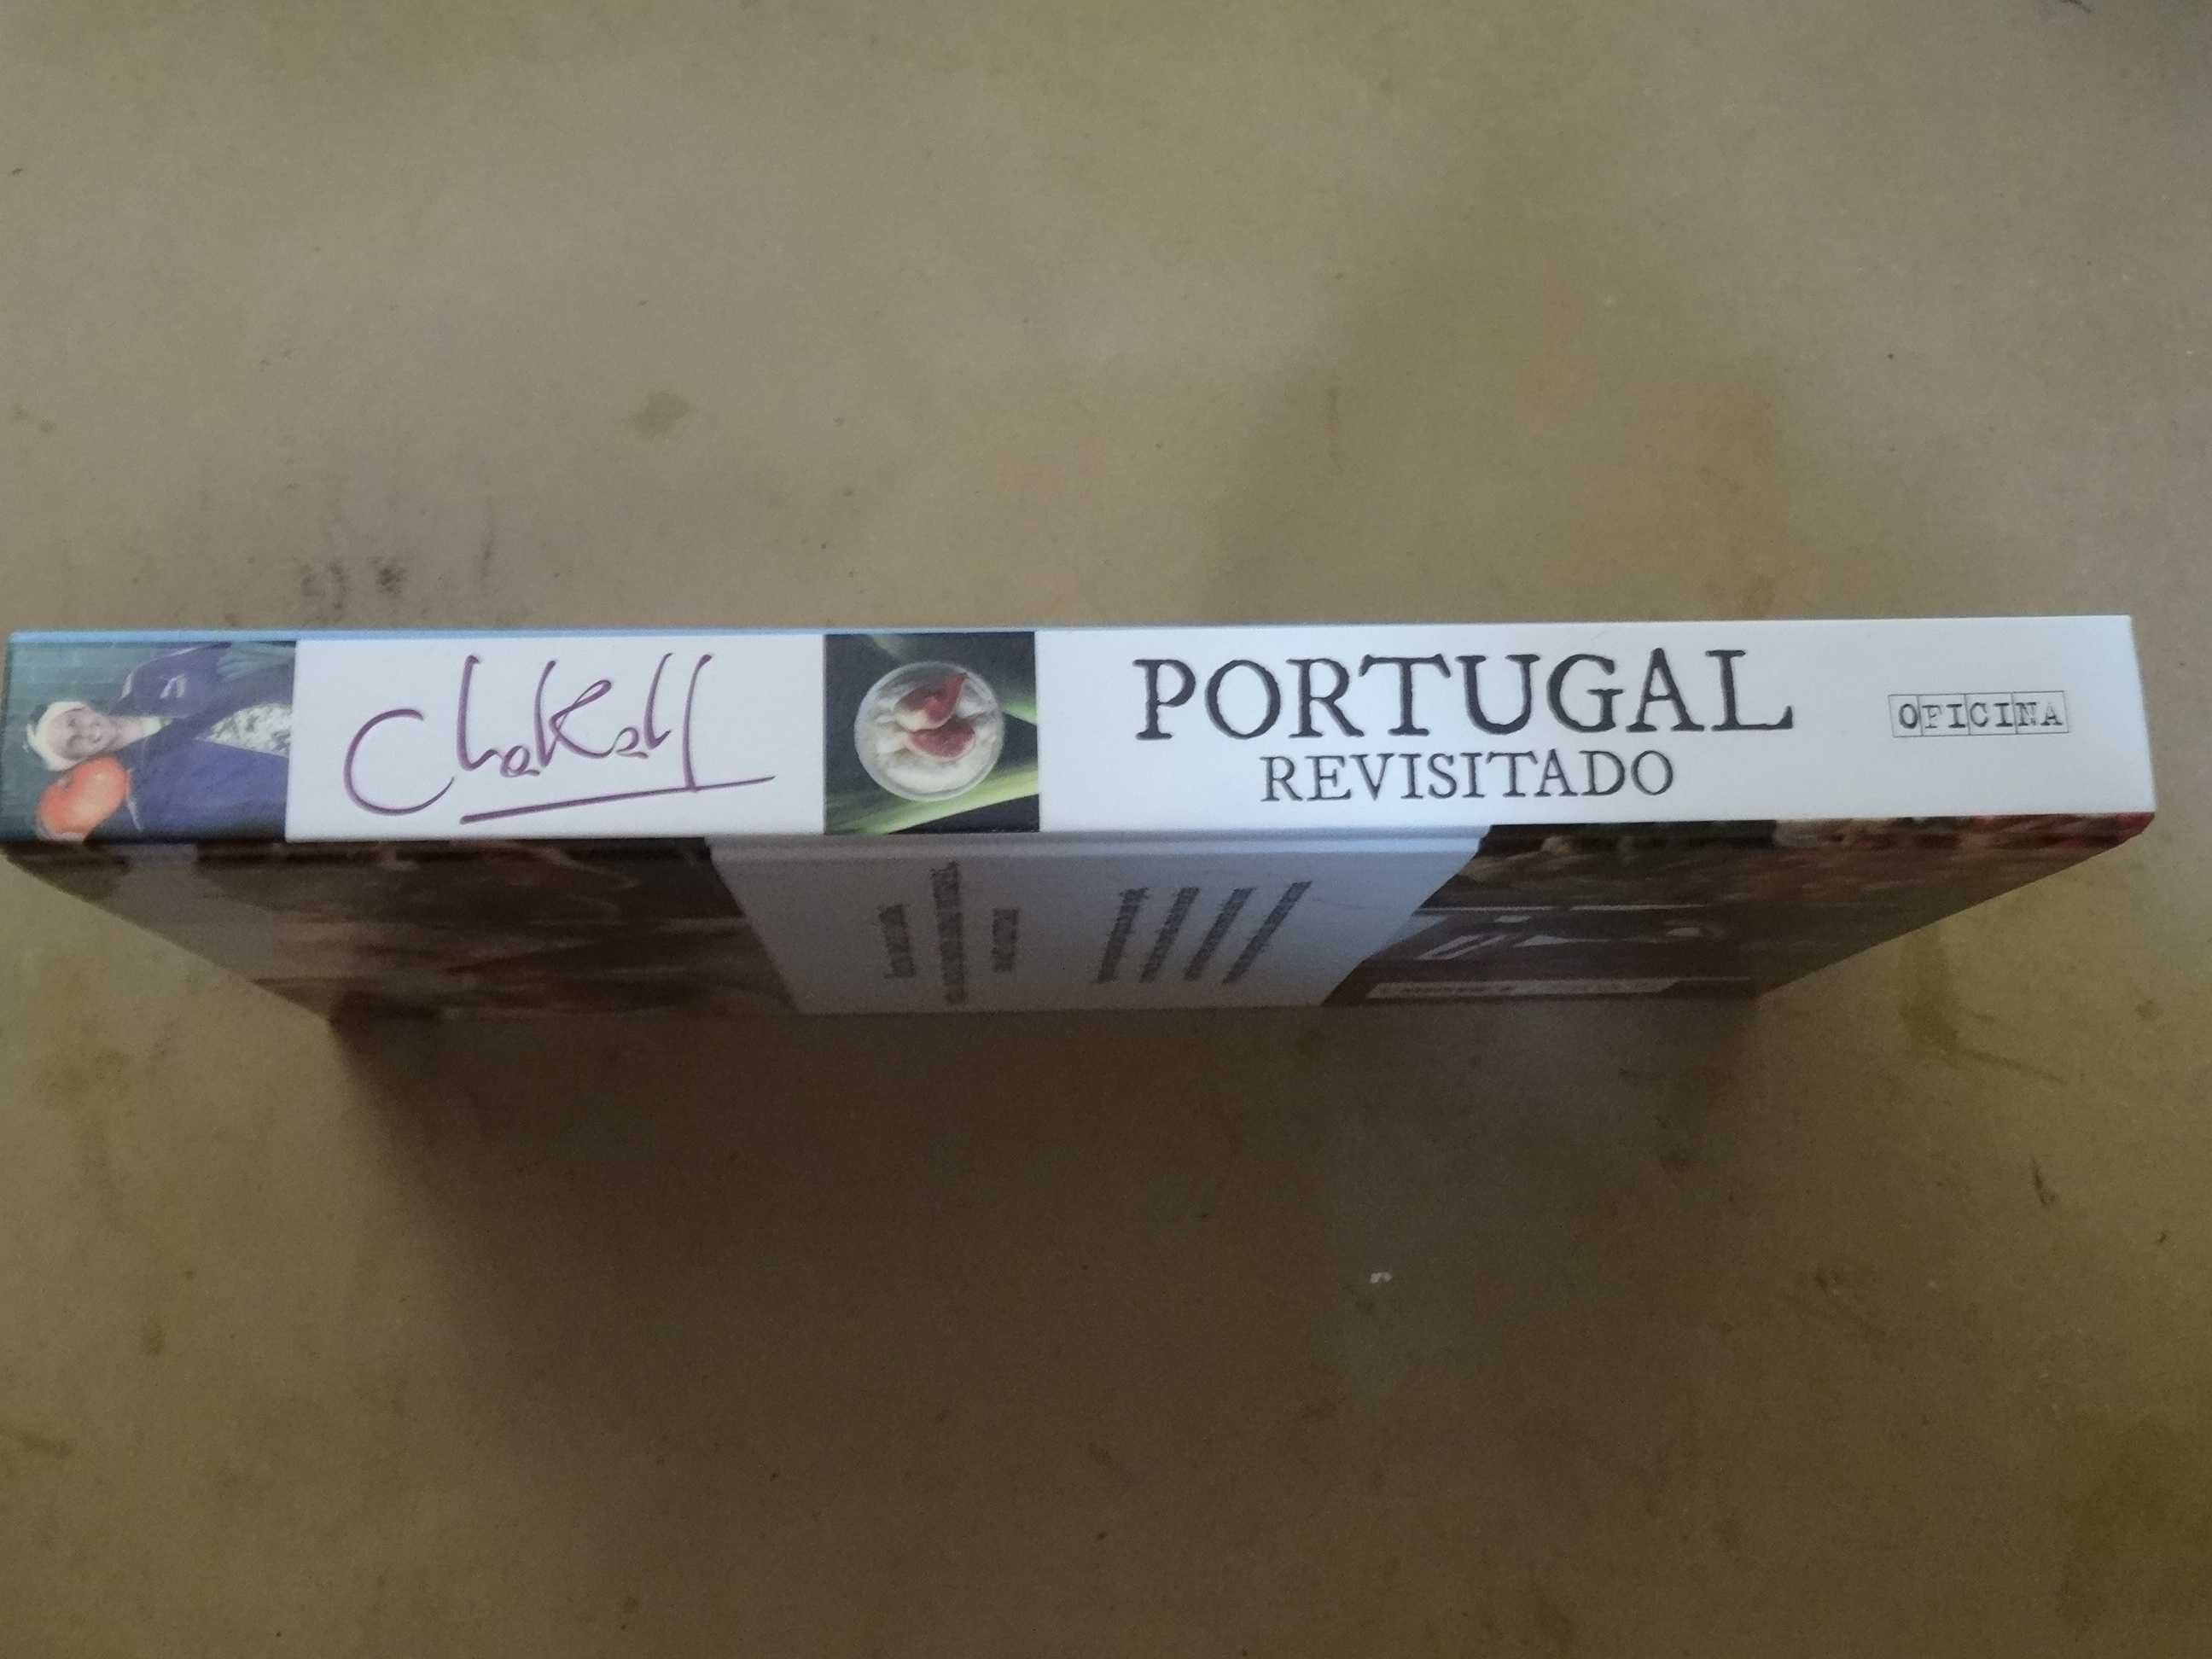 Portugal Revisitado de Chakall